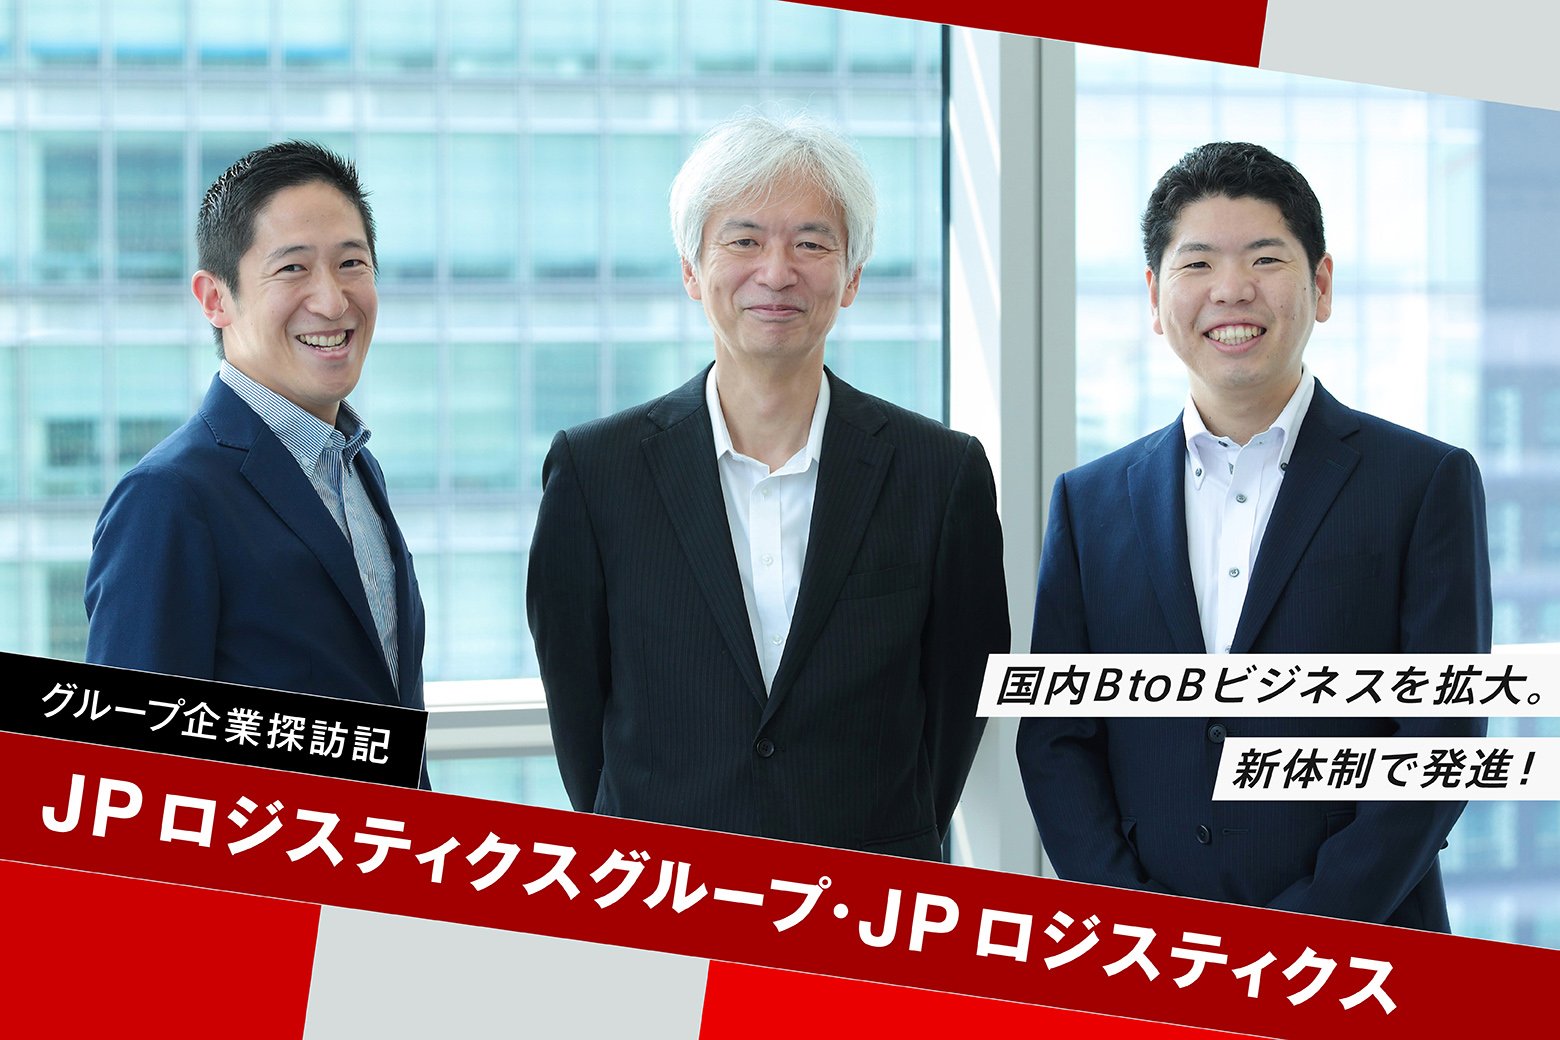 【グループ企業探訪記】JPロジスティクスグループ株式会社、JPロジスティクス株式会社